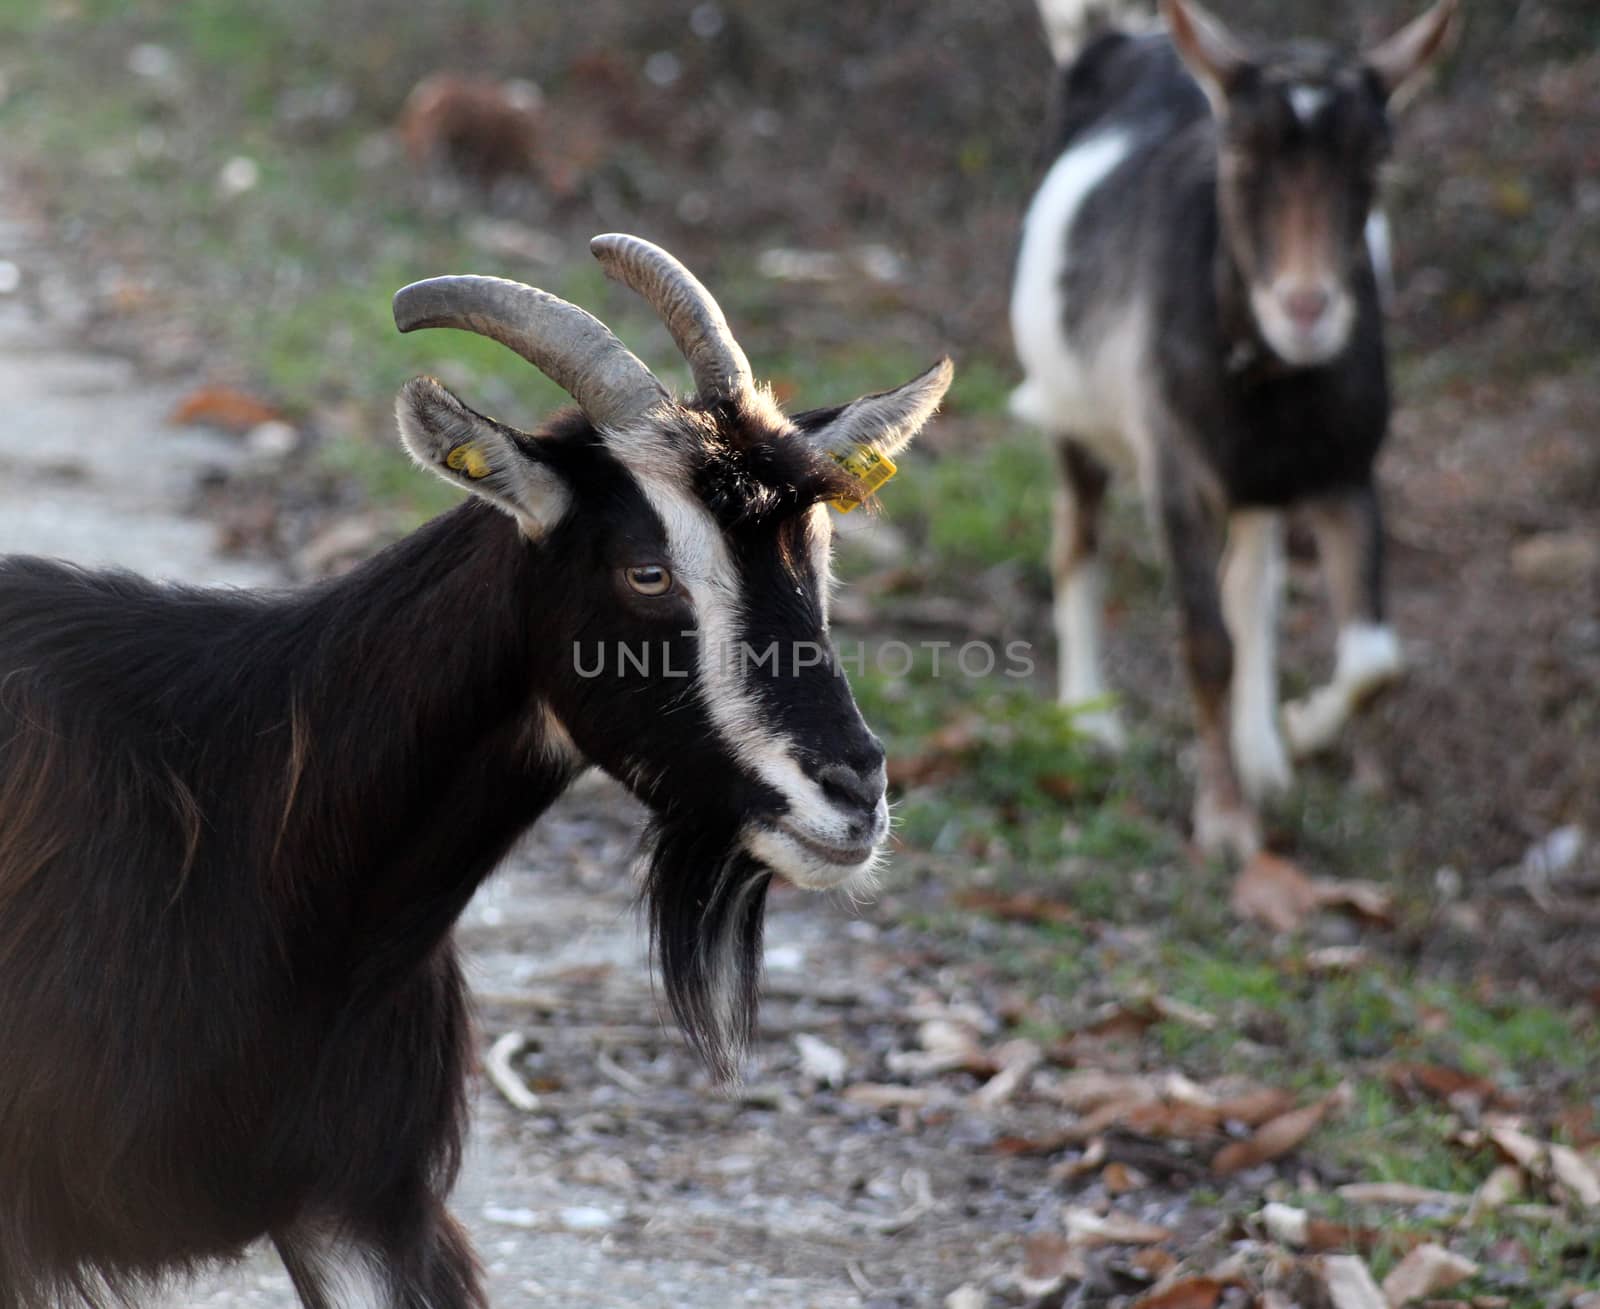 goats on an asphalt road by nehru